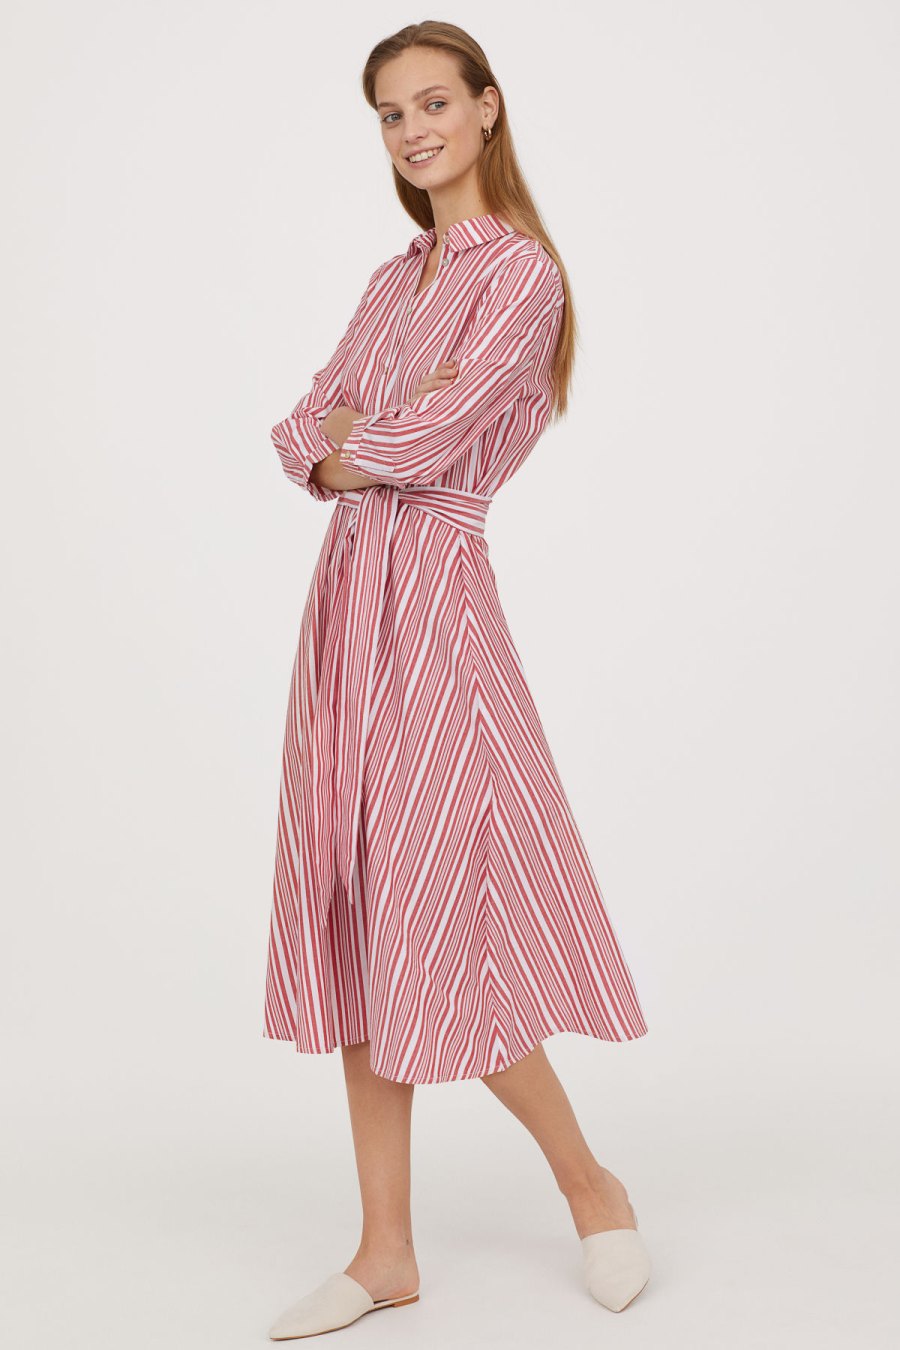 H&M Summer Dresses Under 50 Slips, Maxi Dresses, OfftheShoulder